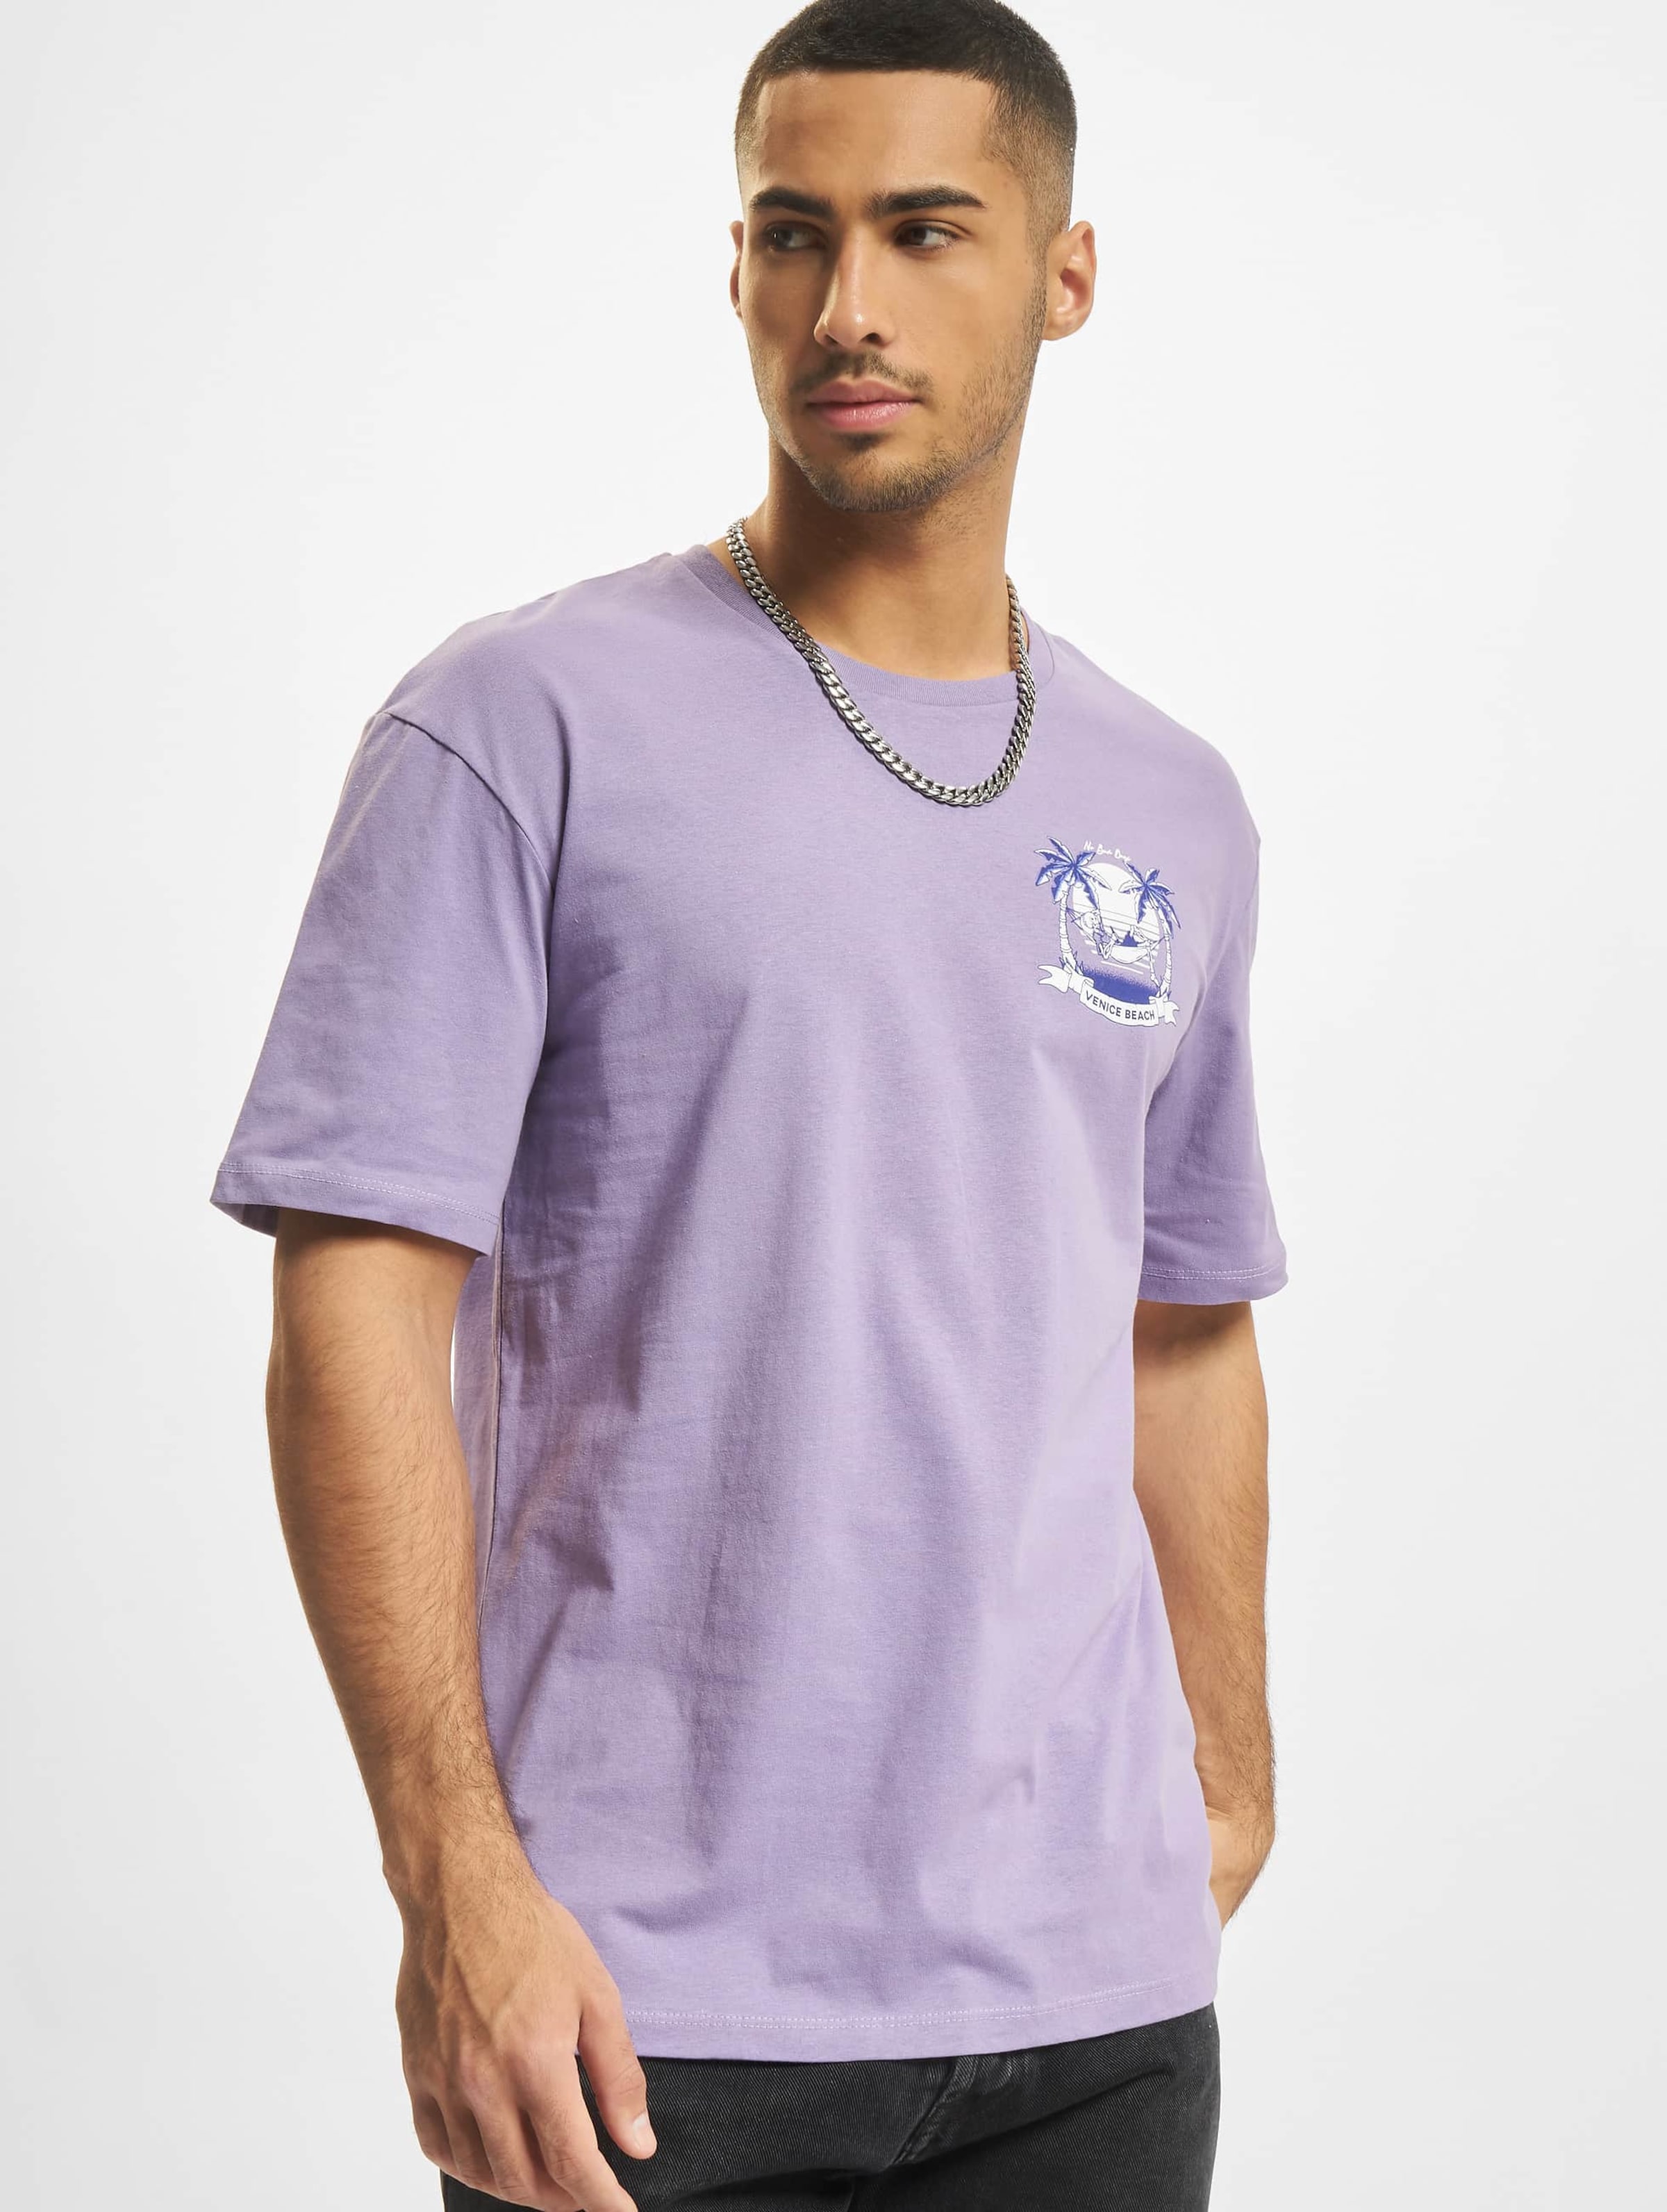 Jack & Jones Chiller Crew Neck T-Shirt Mannen op kleur violet, Maat XXL